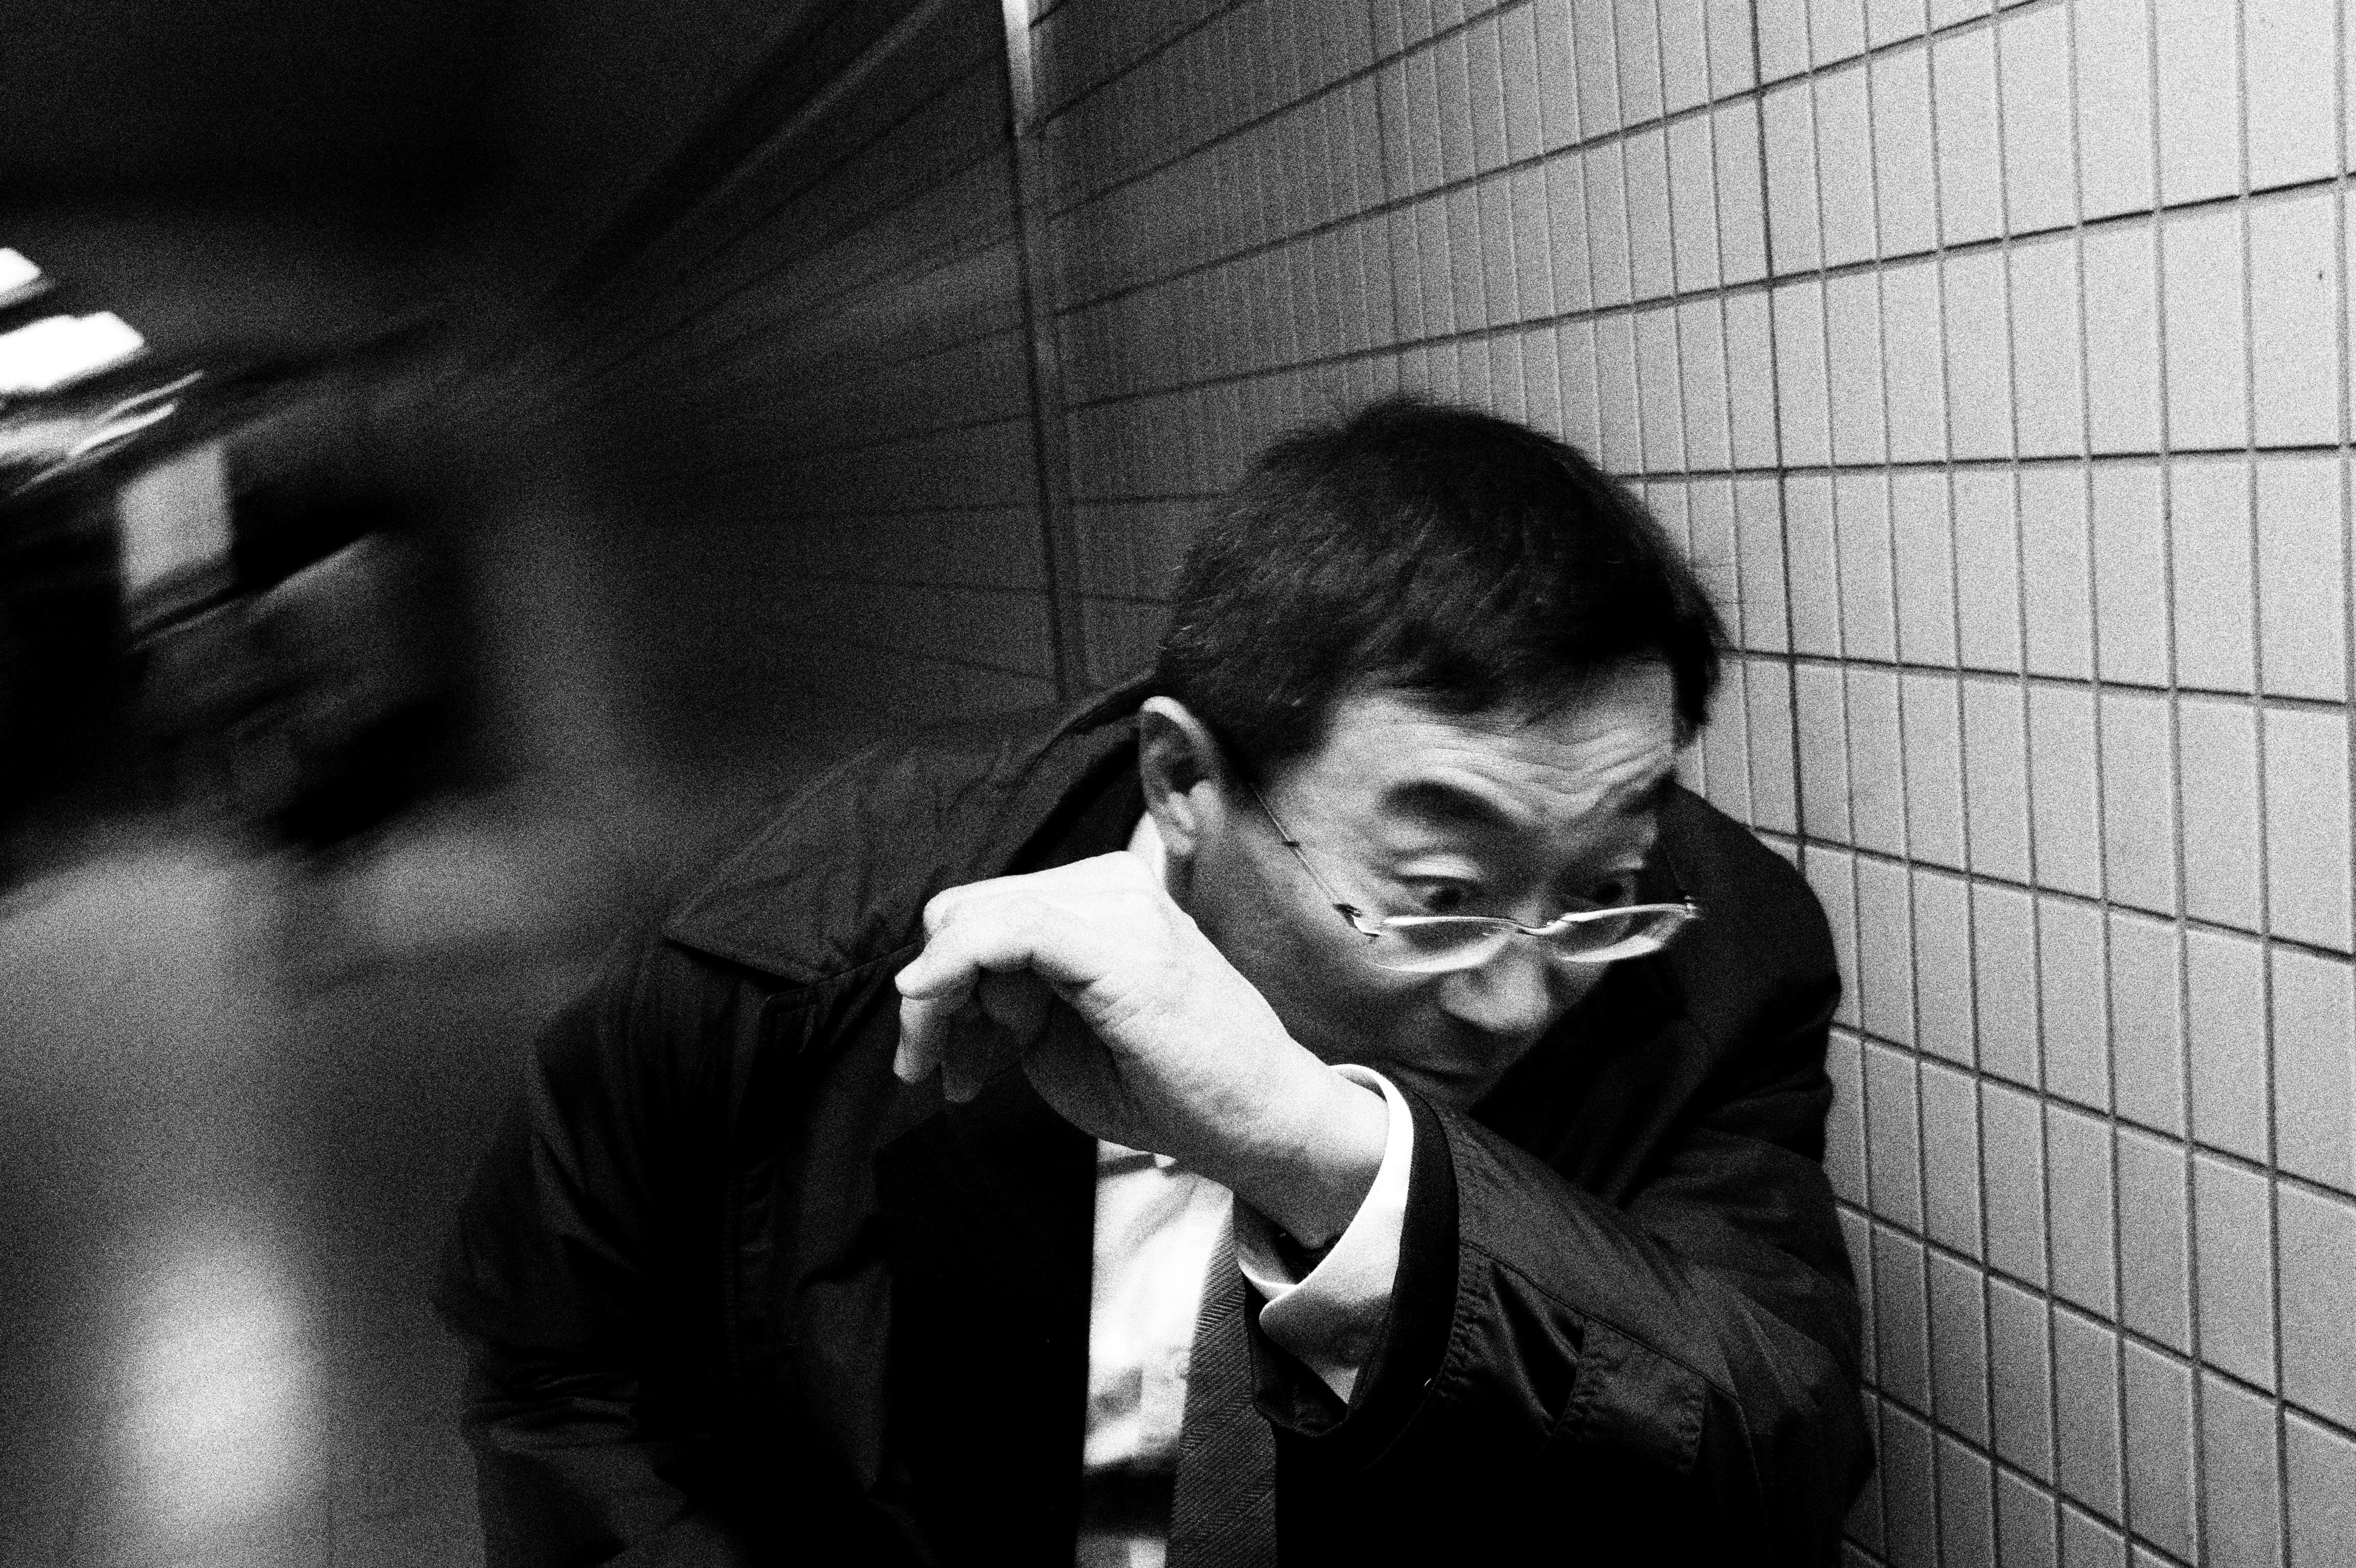 Man dodging. Tokyo, 2011.